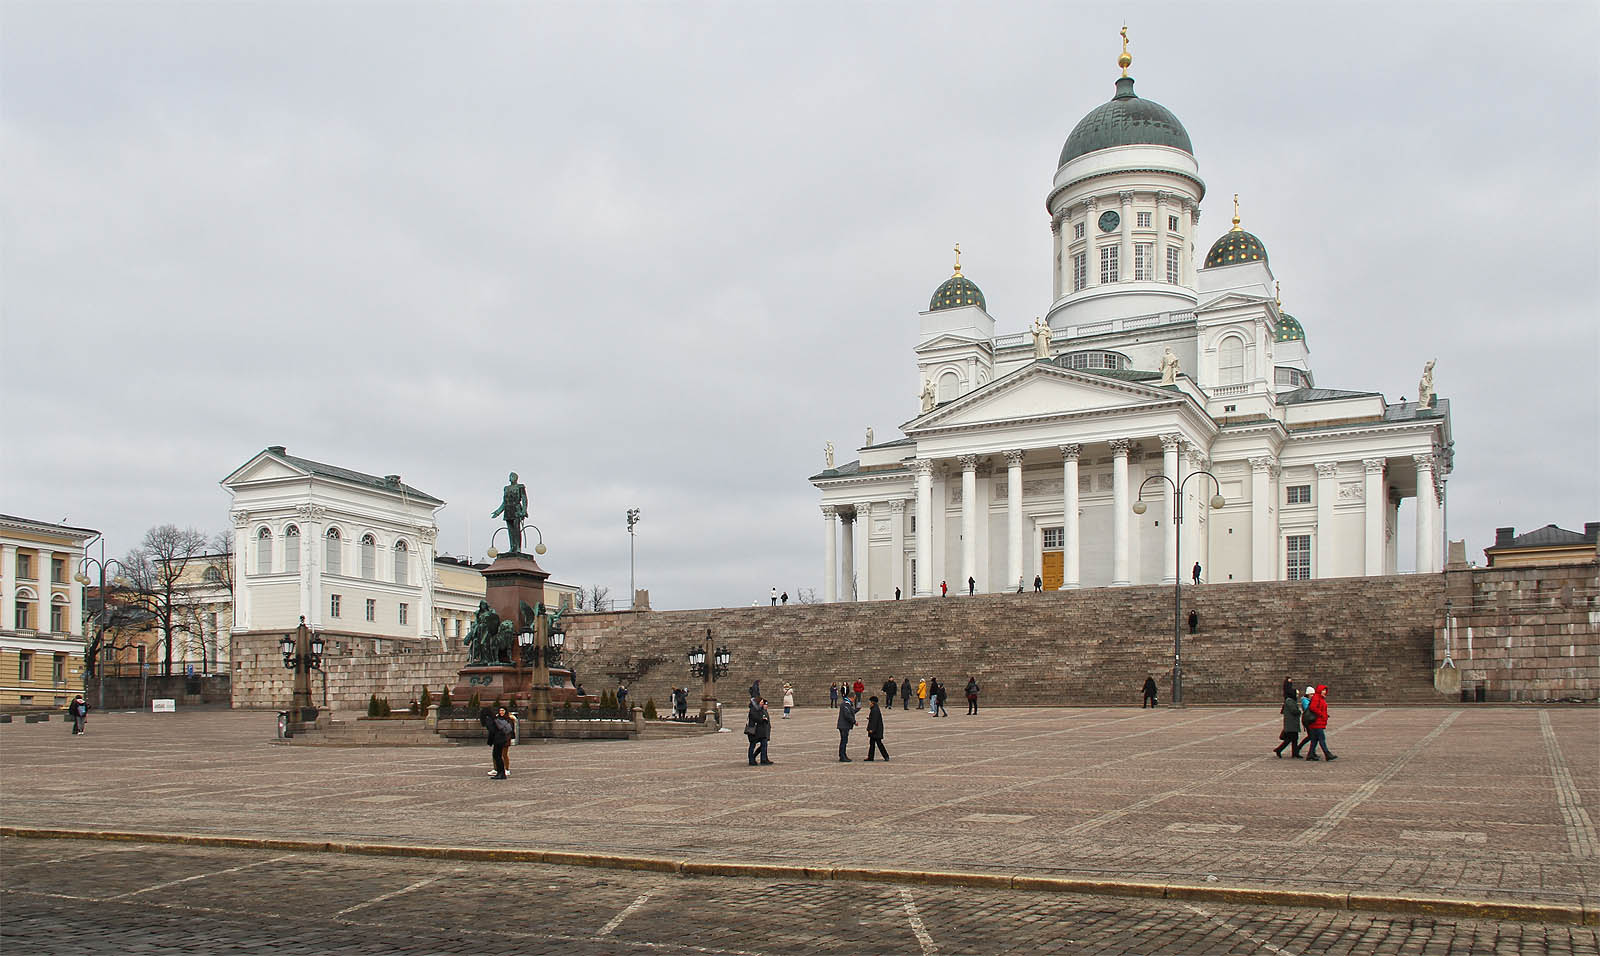 Evangelická katedrála na Senátním náměstí patří mezi typické turistické cíle v Helsinkách. Vystavěna byla v období ruské nadvlády mezi roky 1830 a 1852 a jejím autorem byl finský architekt Ernst Bernhard Lohrmann.